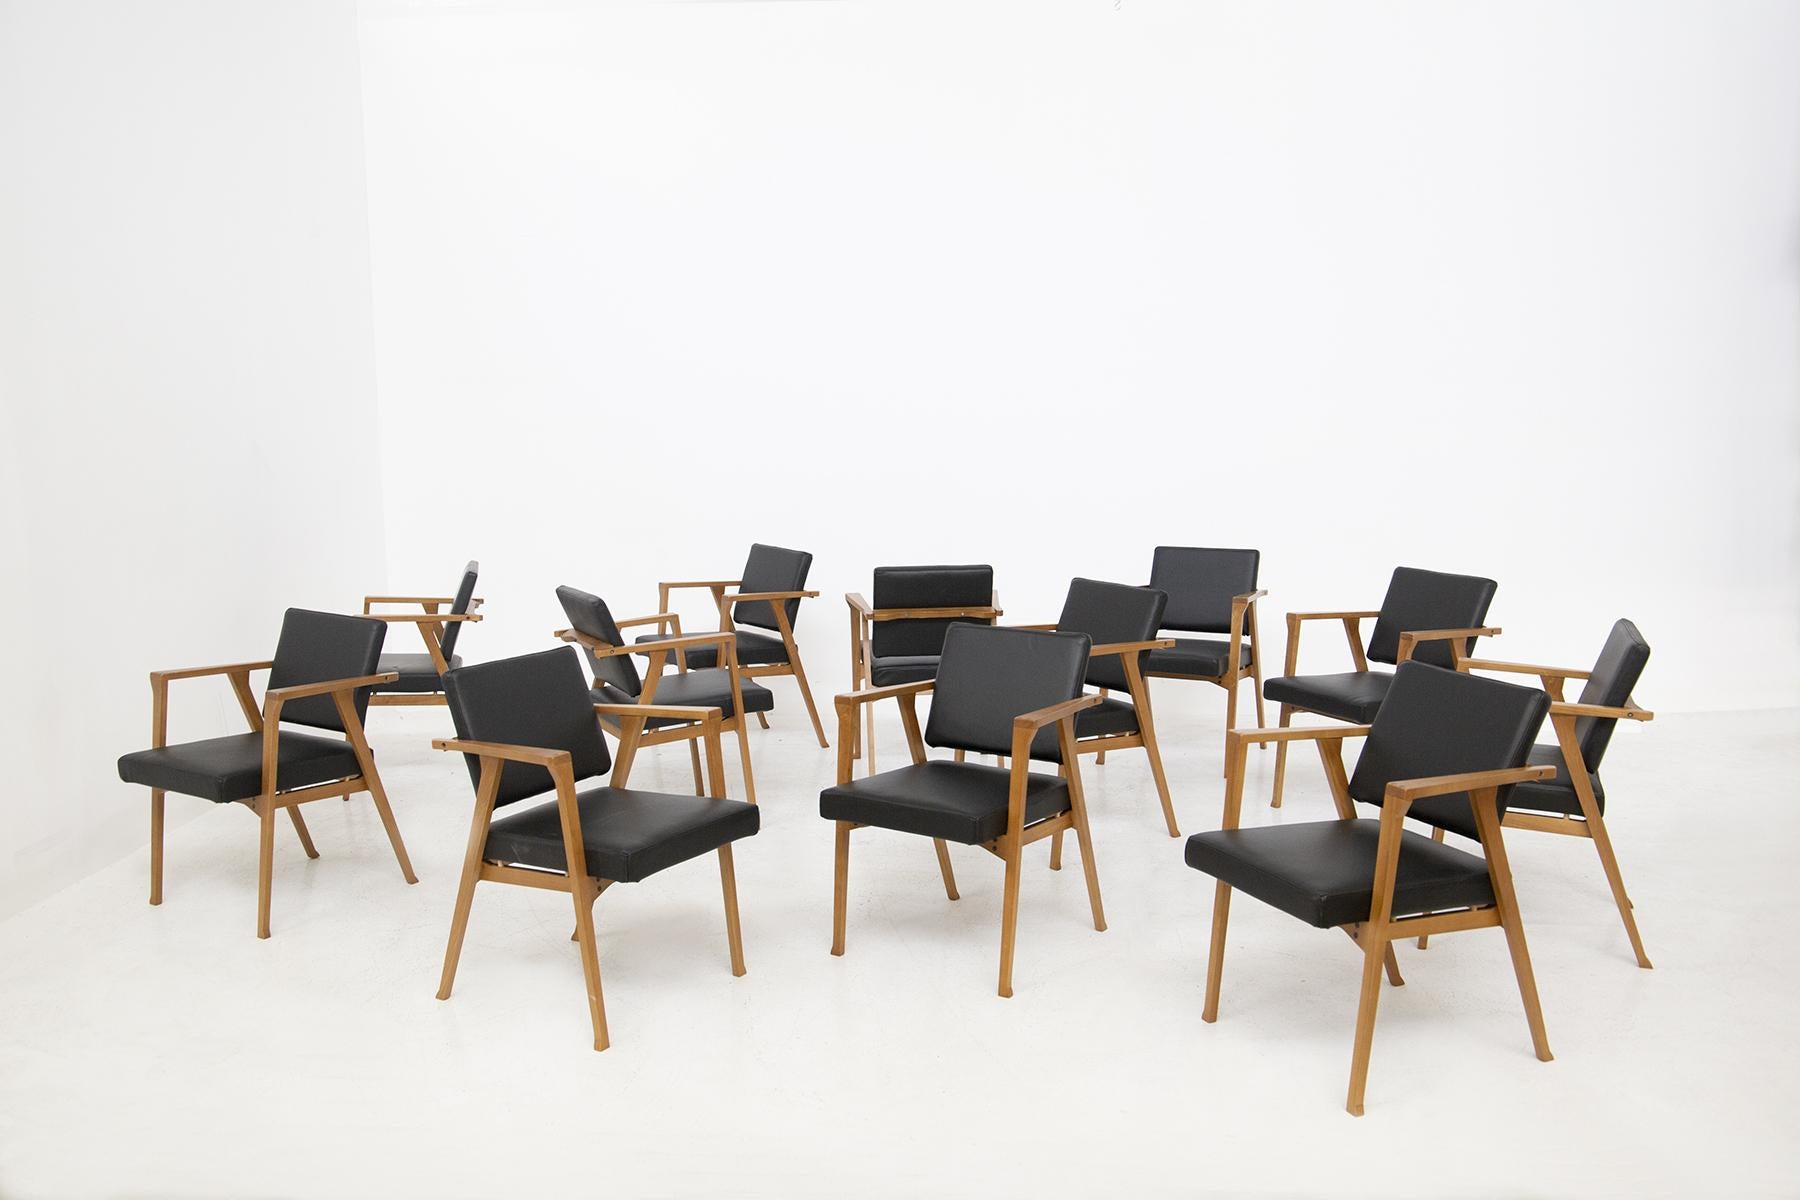 Magnifique ensemble composé de douze chaises attribué à Franco Albini de 1950.
La structure des chaises a été réalisée en bois, avec une forme purement géométrique et carrée. L'assise et le dossier ont été recouverts de cuir noir fin. Le dossier